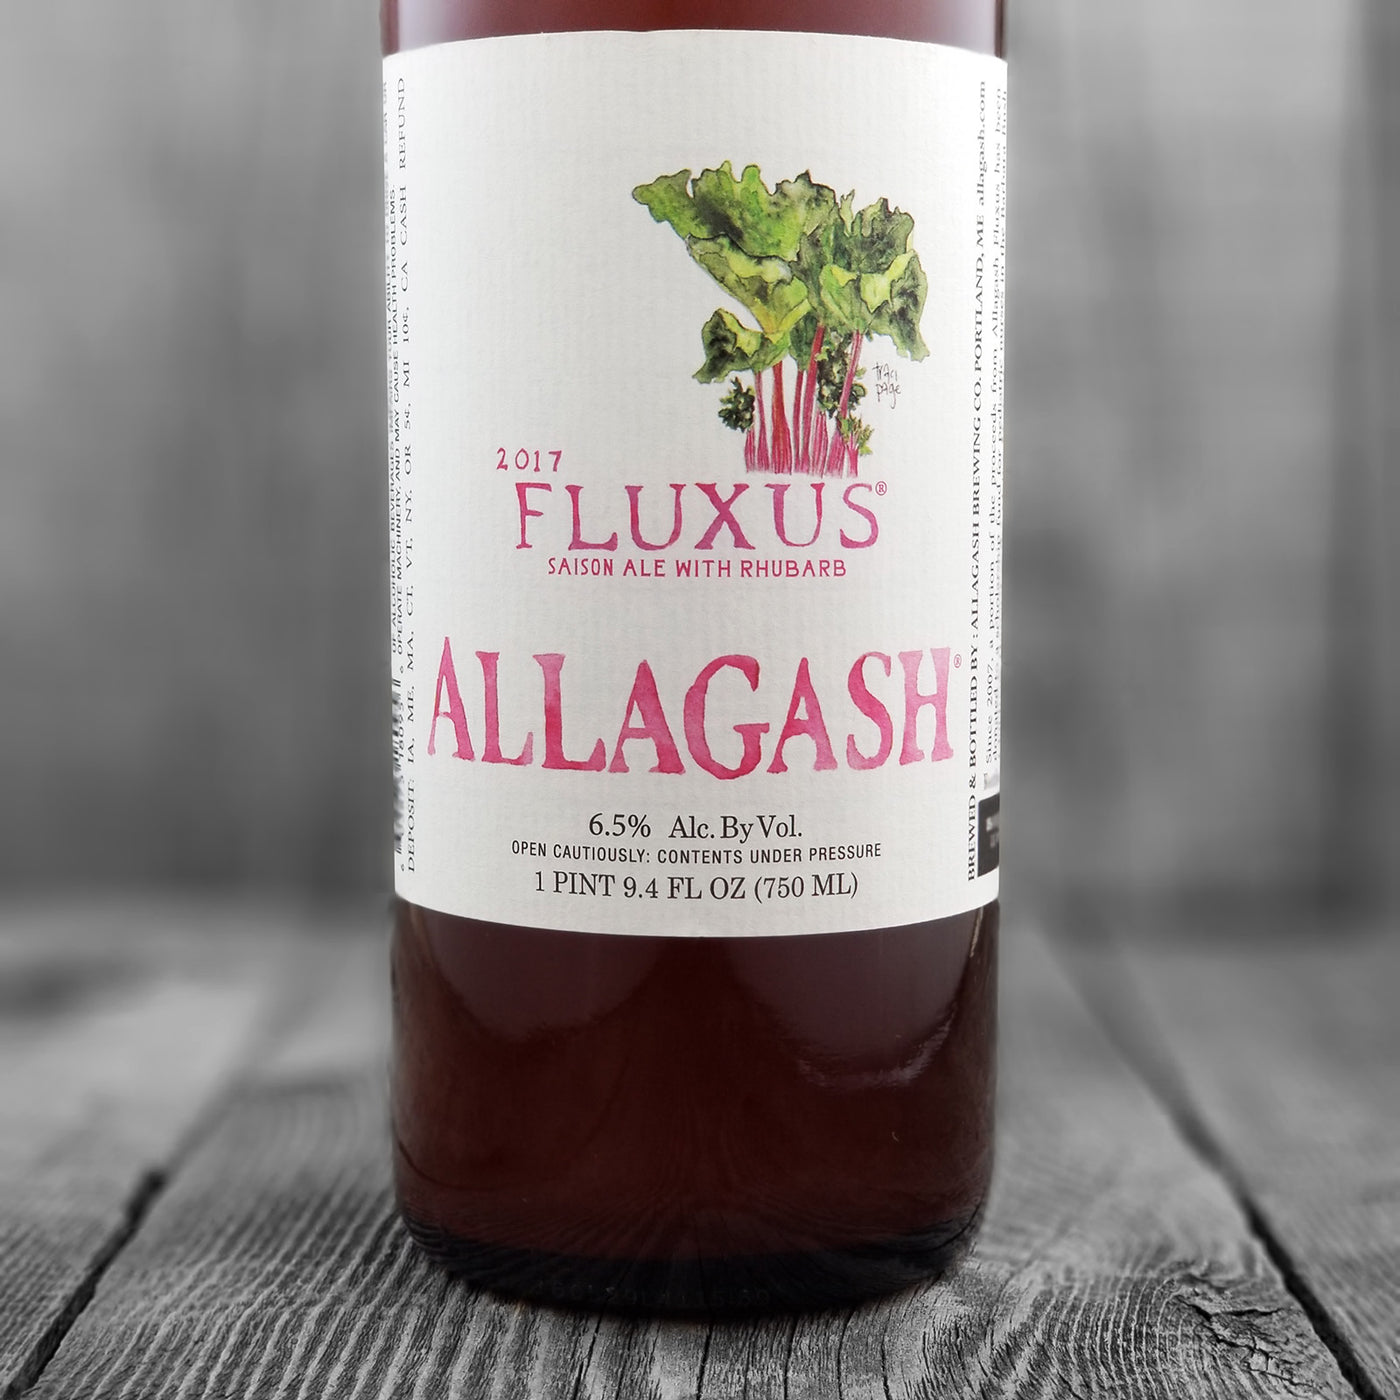 Allagash Fluxus 2017